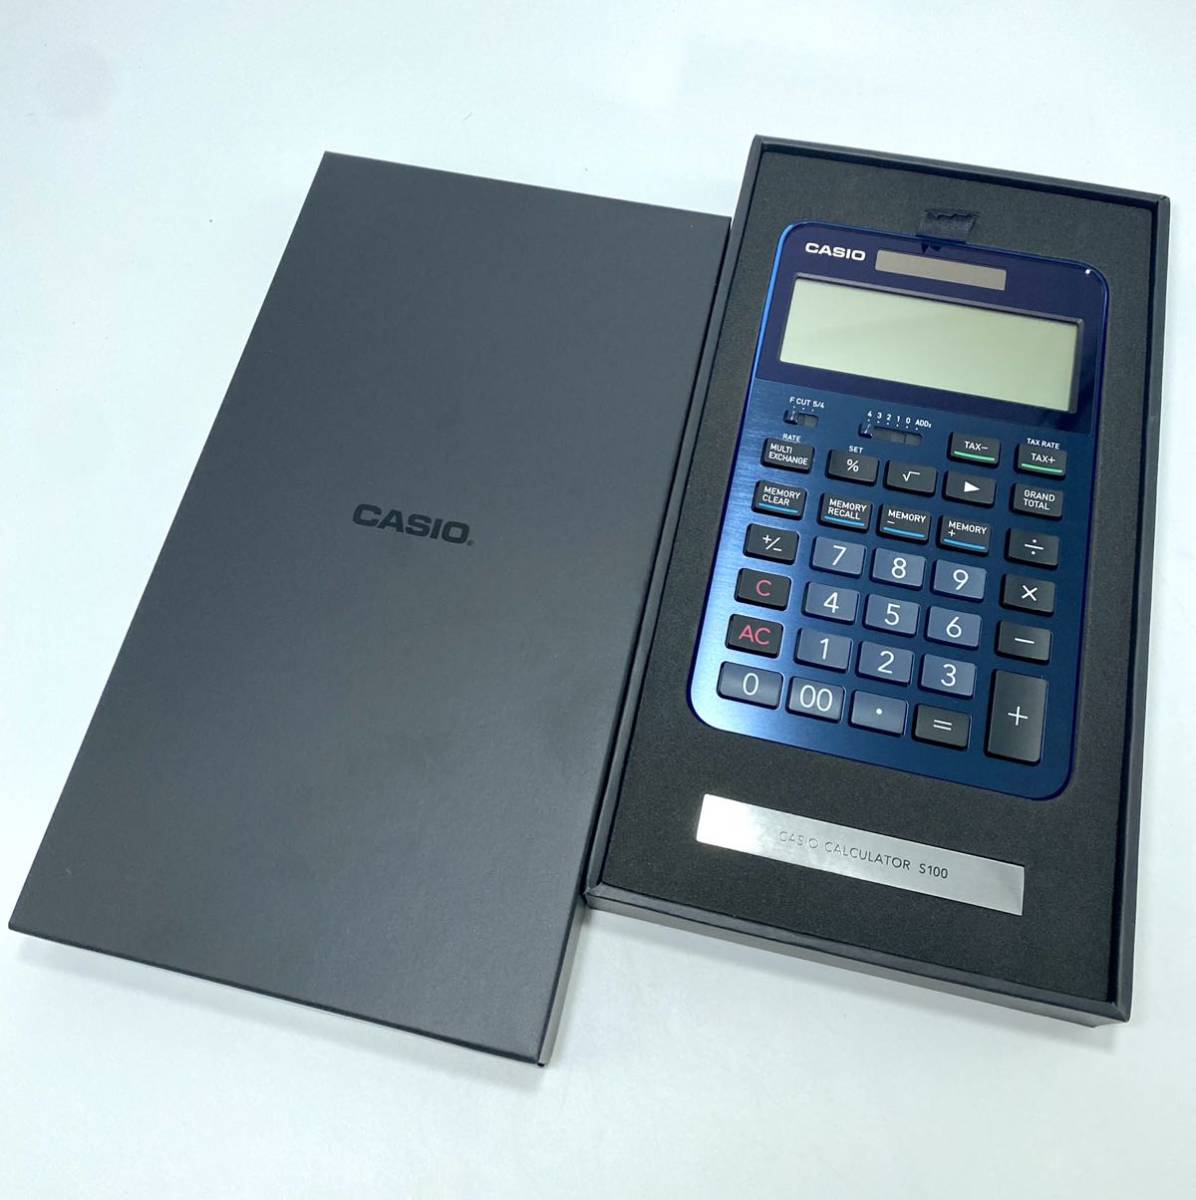 【未使用】カシオ プレミアム電卓 12桁 ネイビー S100BU CASIO 究極の機能美を追求したフラッグシップモデル